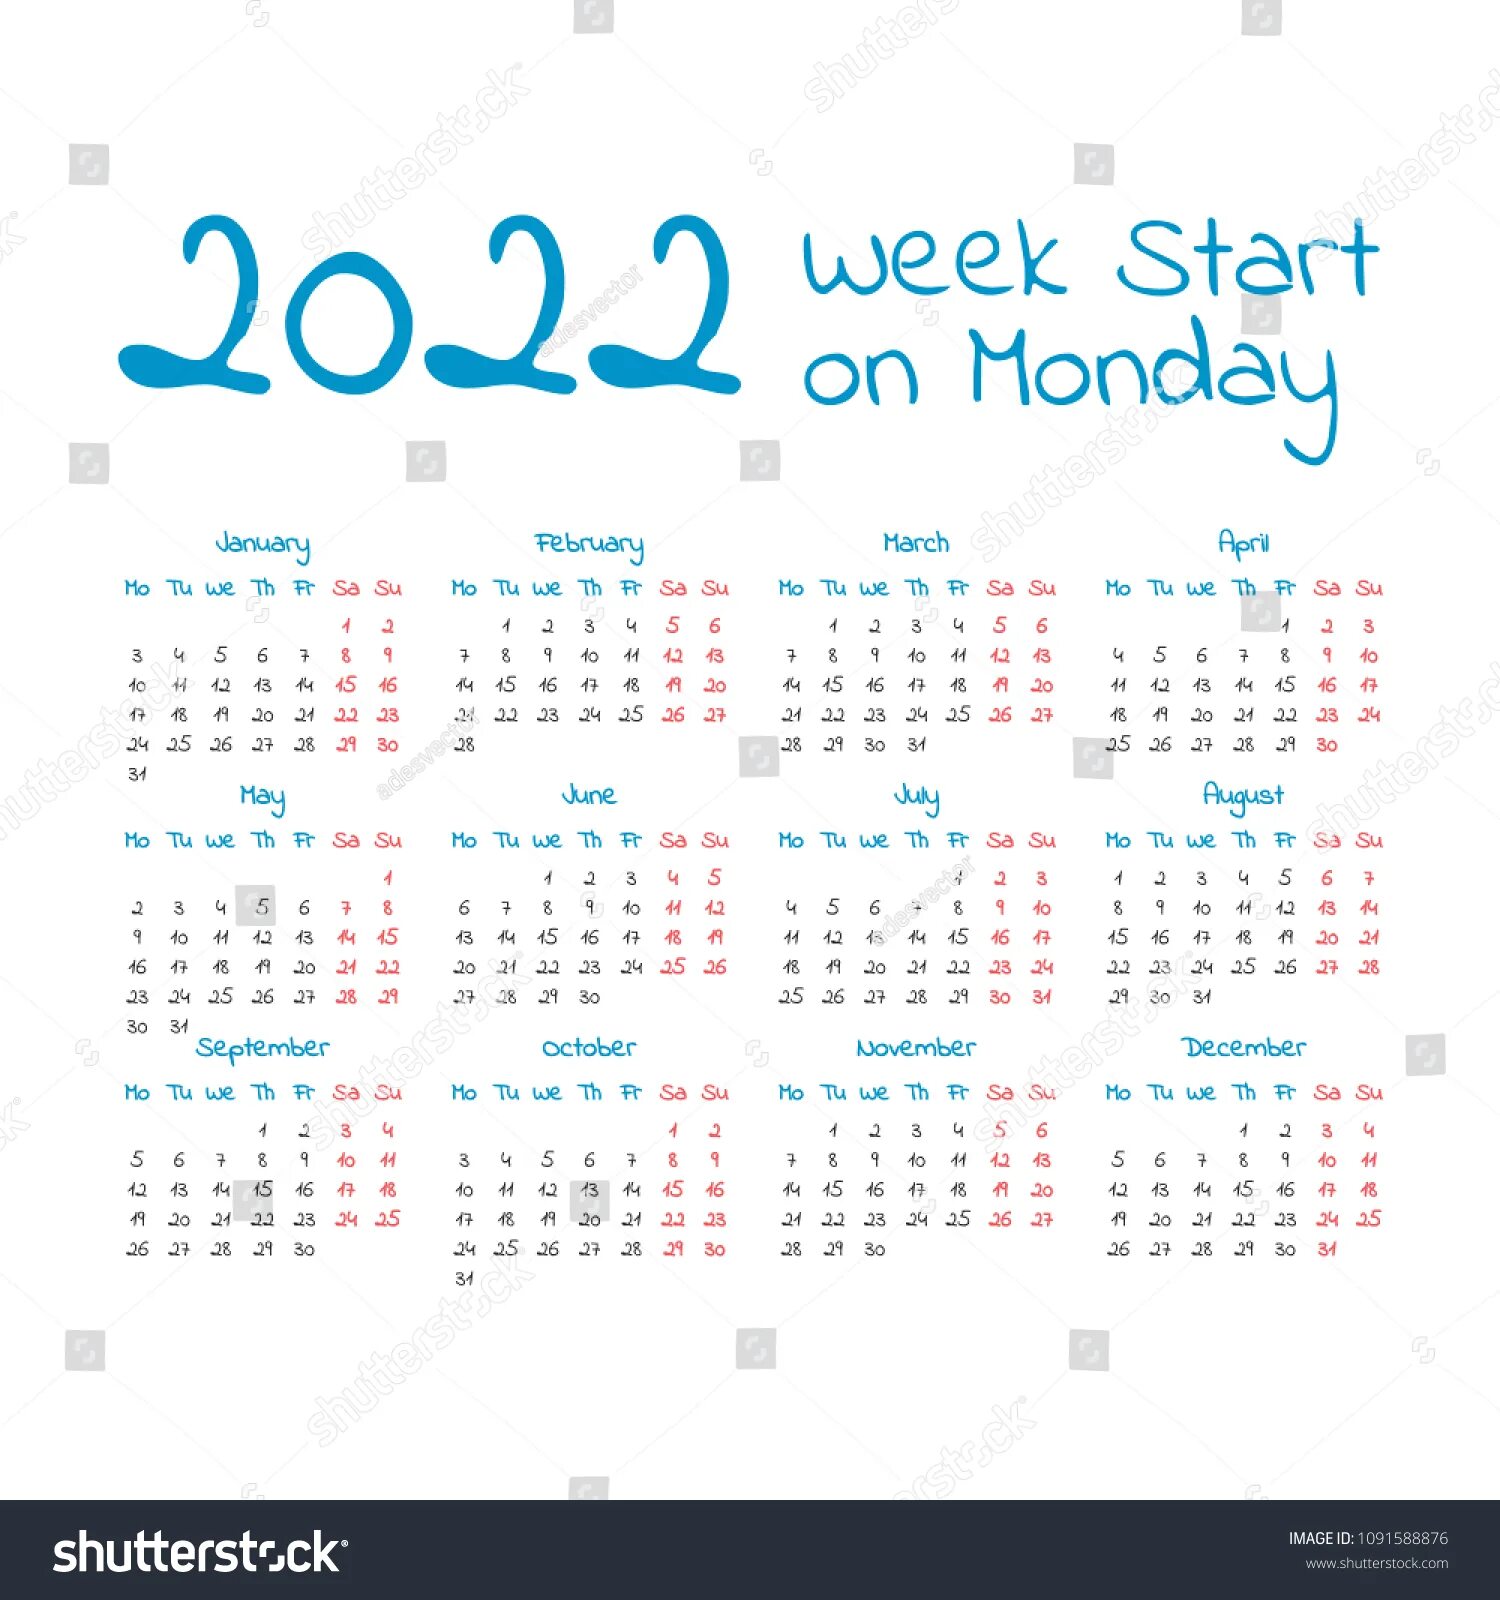 Календарь 2027г. Календарь на 2027 год. Производственный календарь на 2027 год. Календарь 2027 года по месяцам. Календарь 2027 русский.